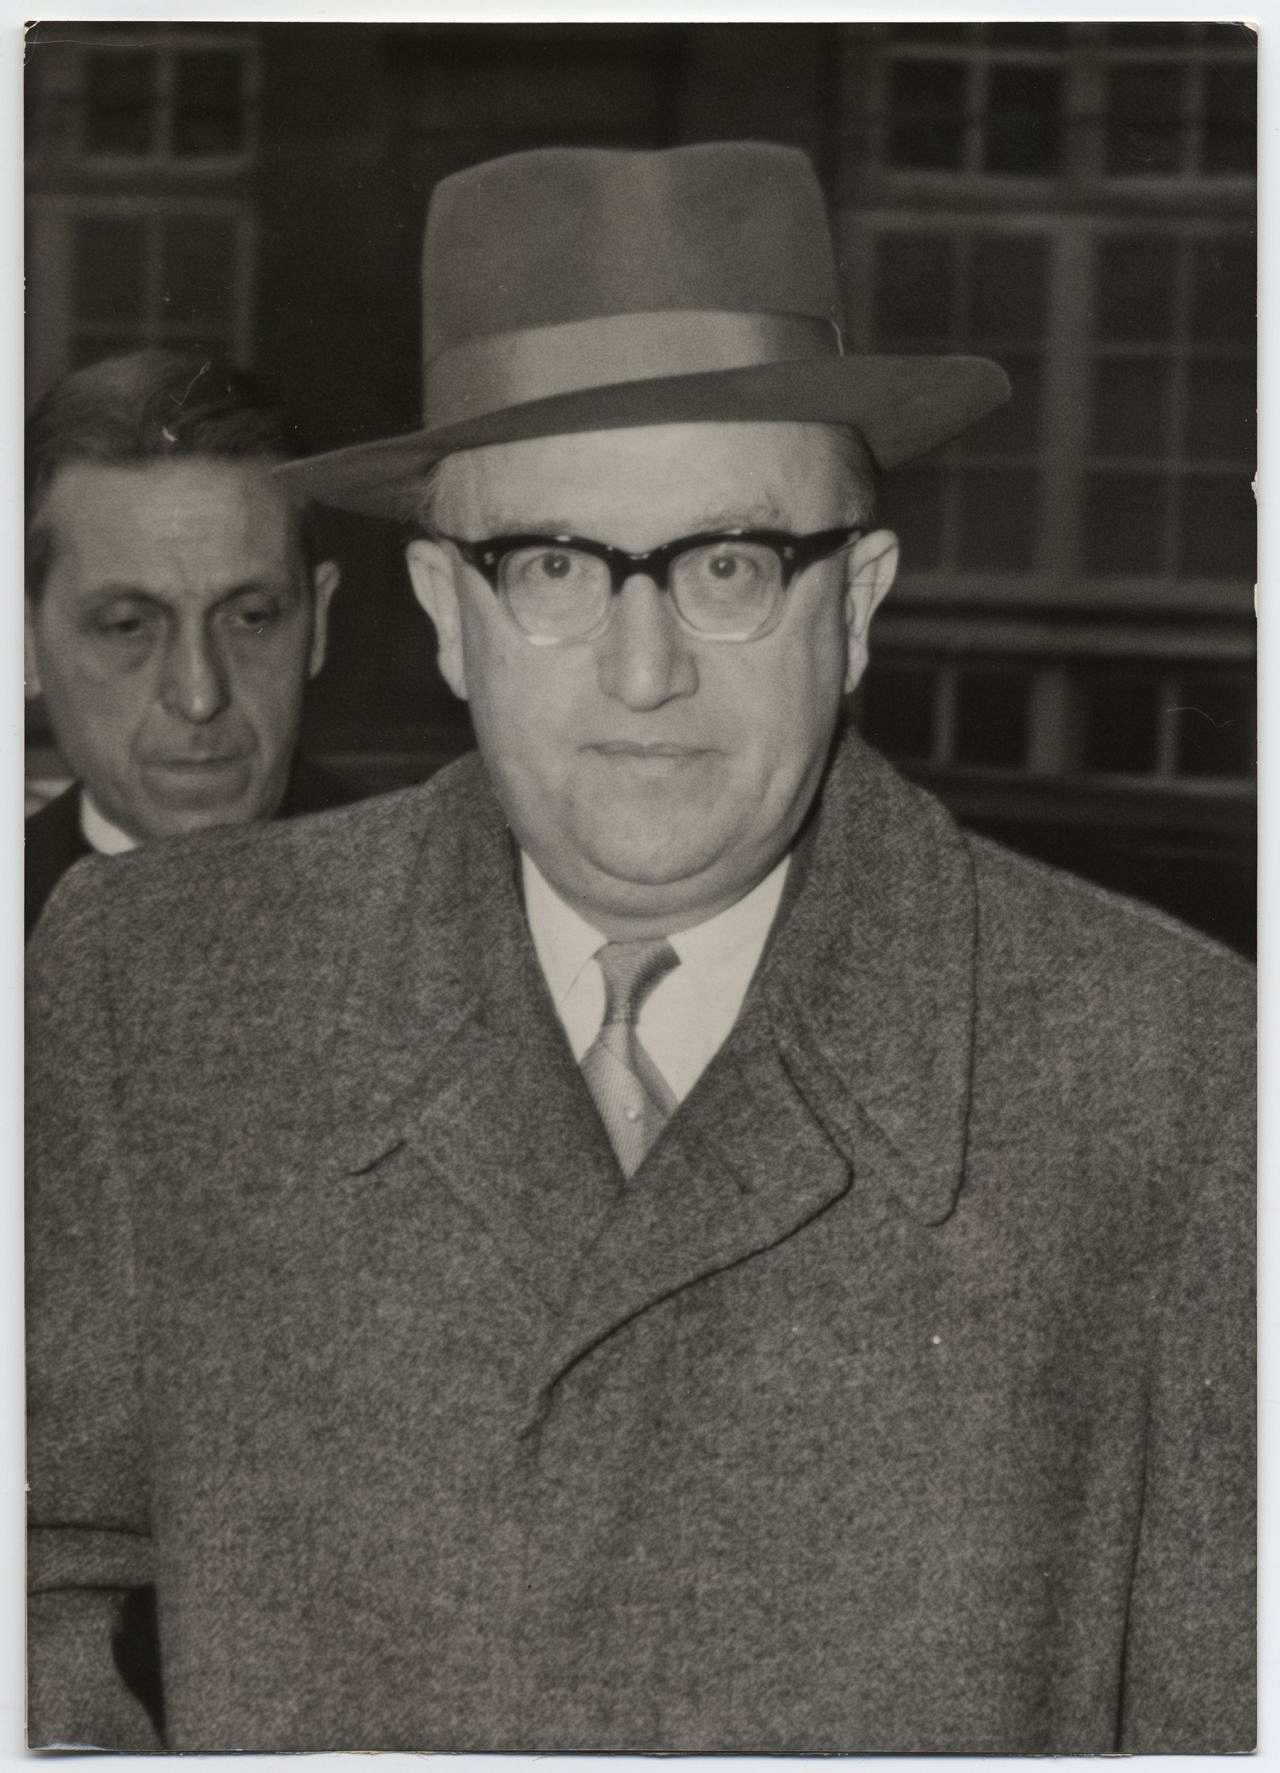 Fotografie des Juristen und Politikers Walter Hallstein, 1958.